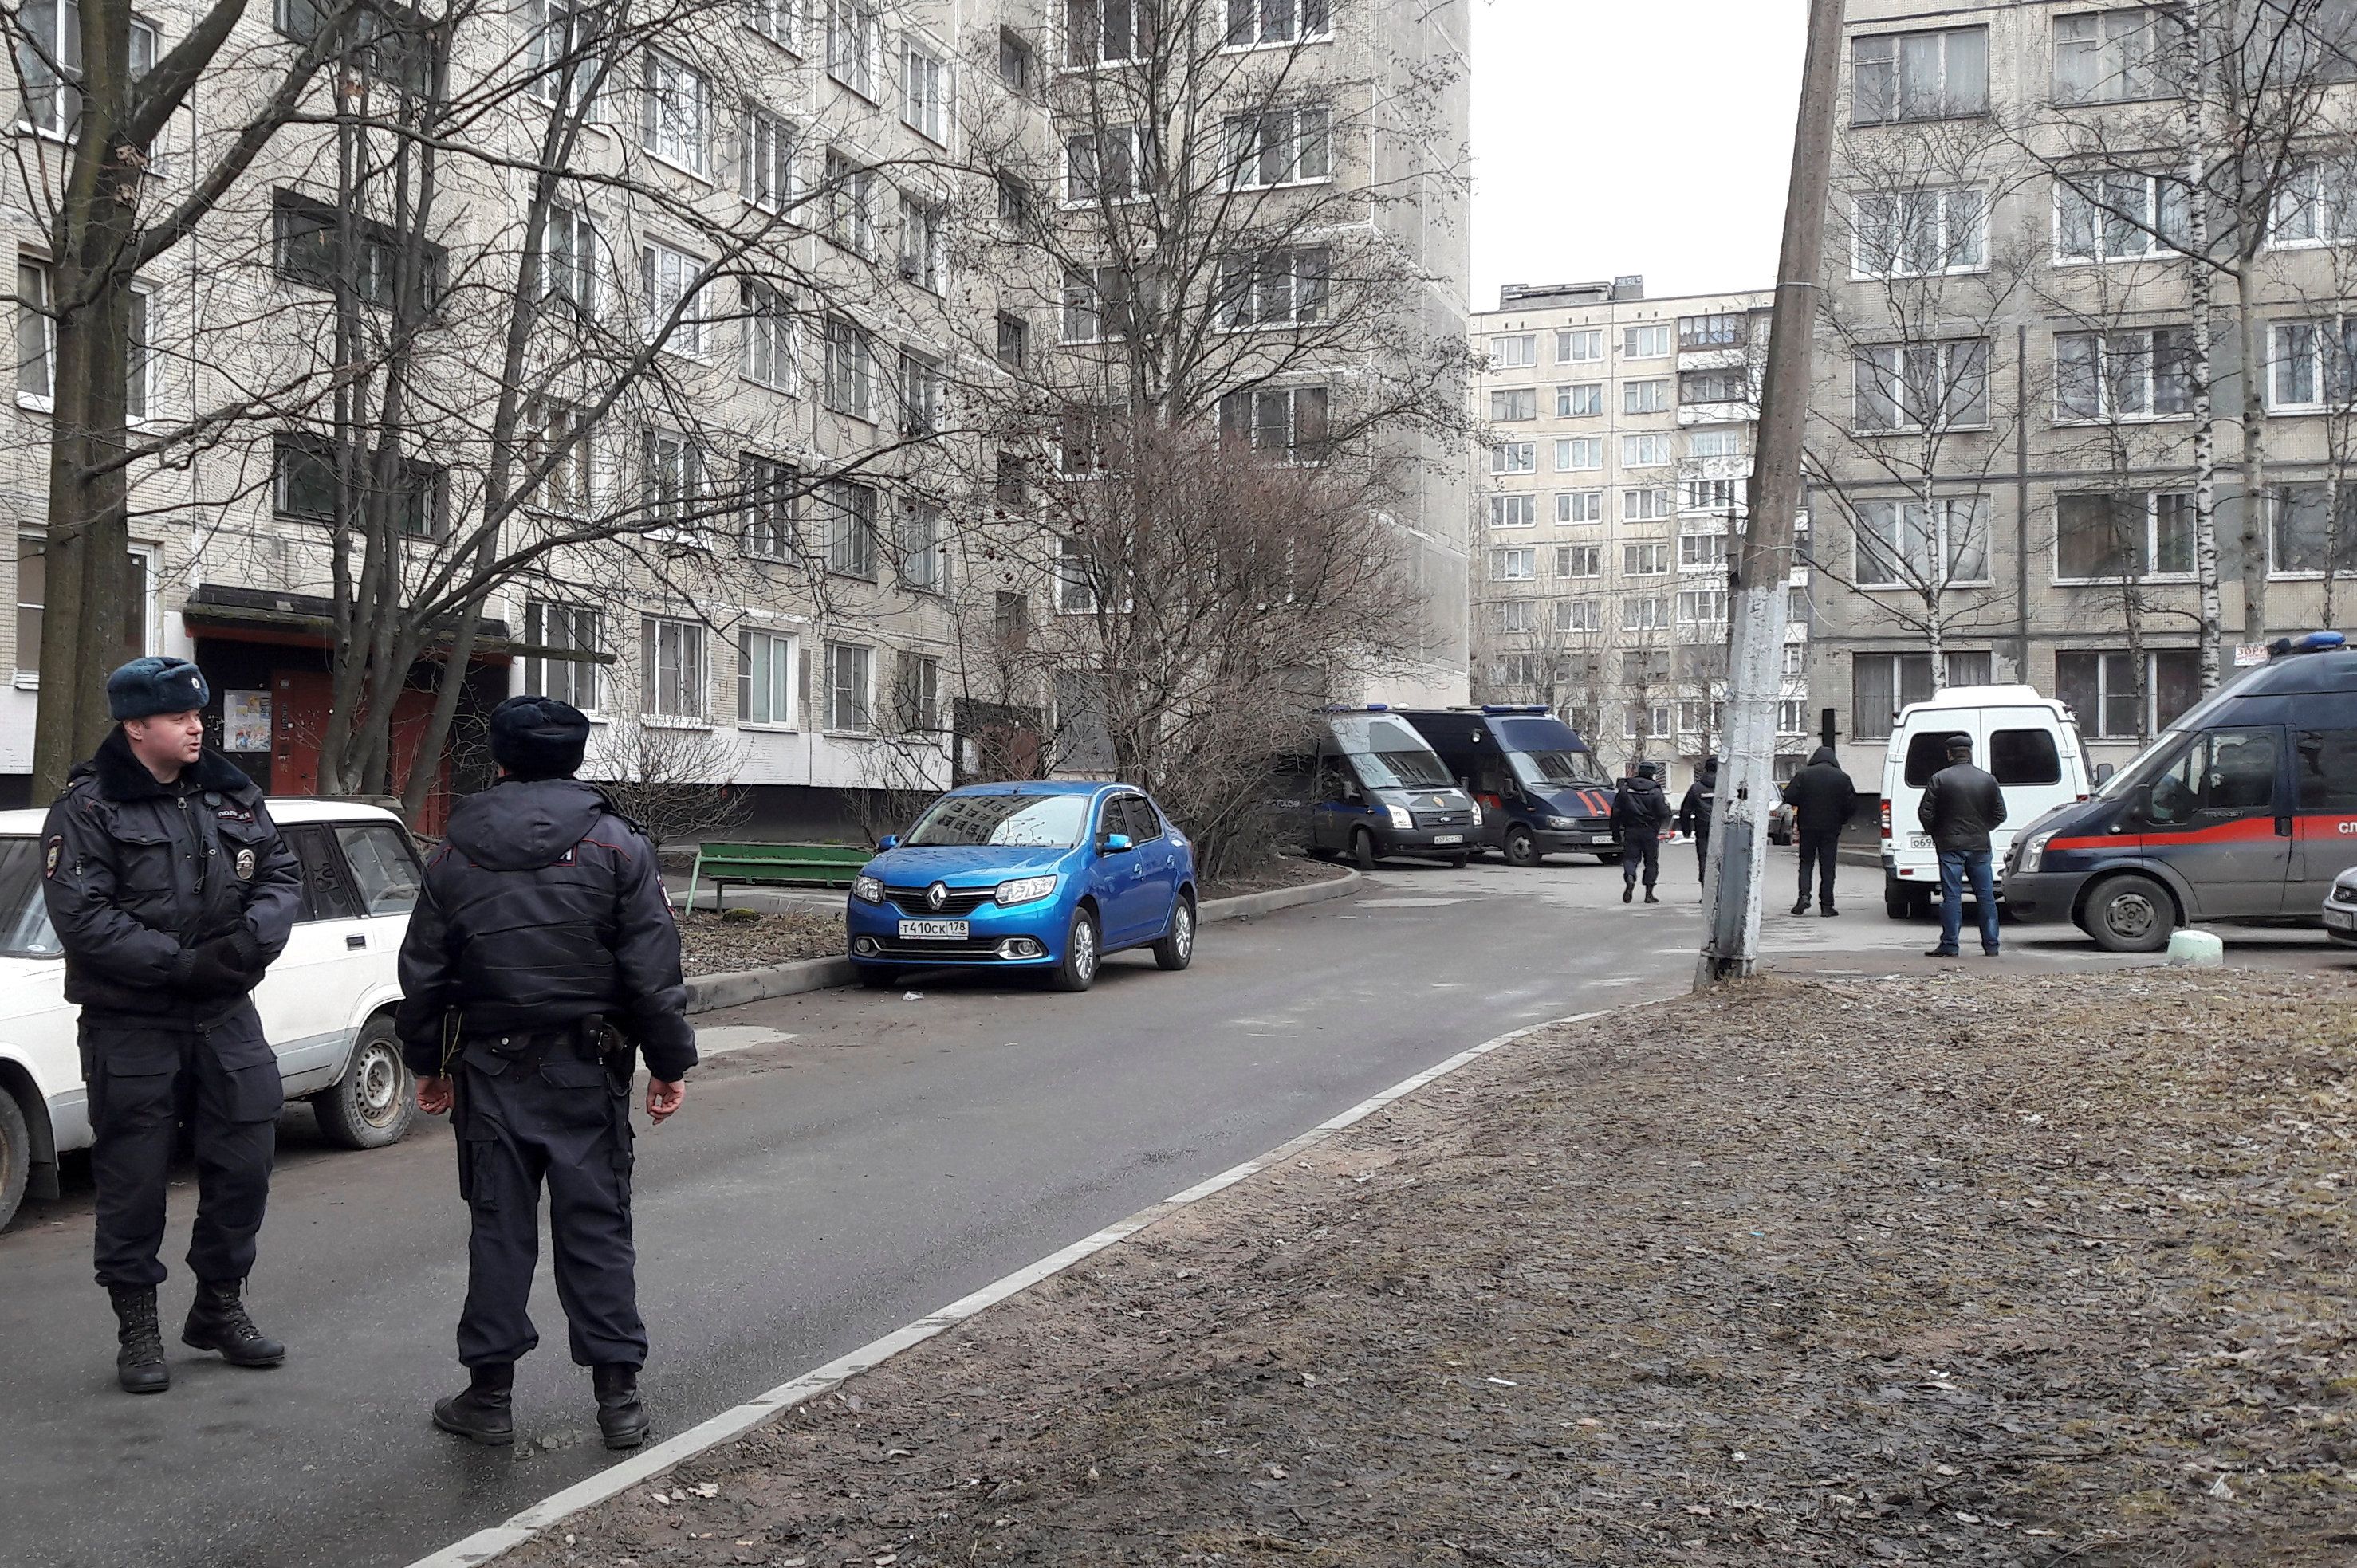 Ρωσία: Επίθεση με μαχαίρια εναντίον αστυνομικών στην πόλη Κασπίσκ